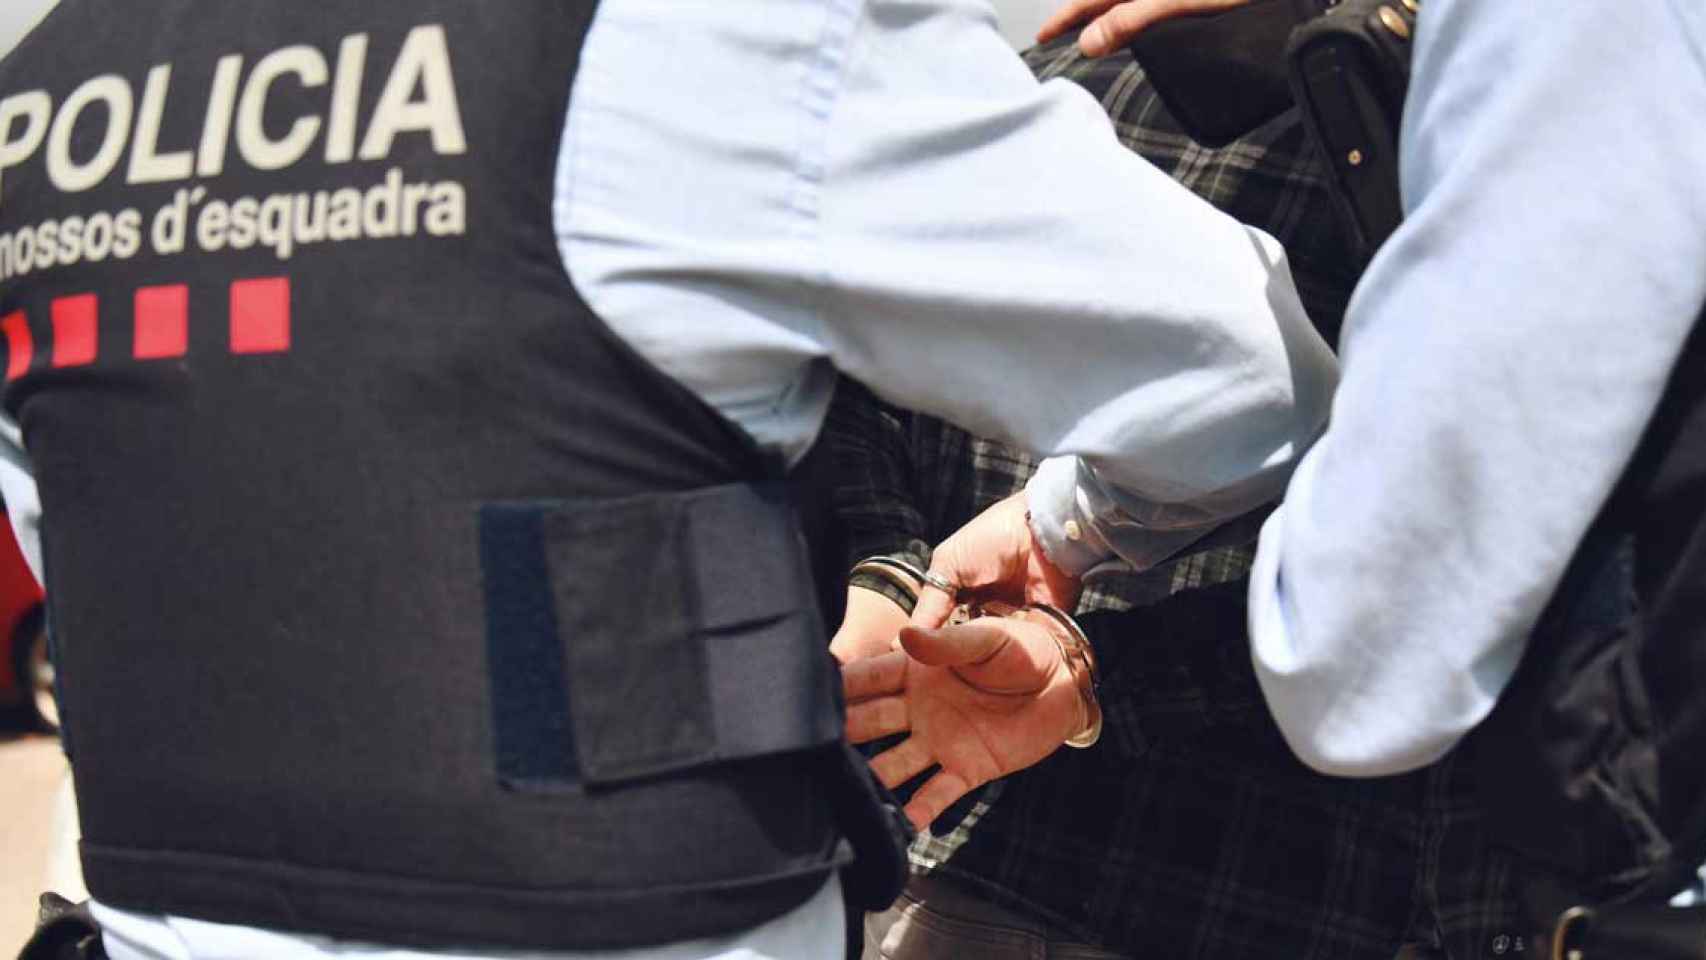 Los mossos efectúan una detención / MOSSOS D'ESQUADRA